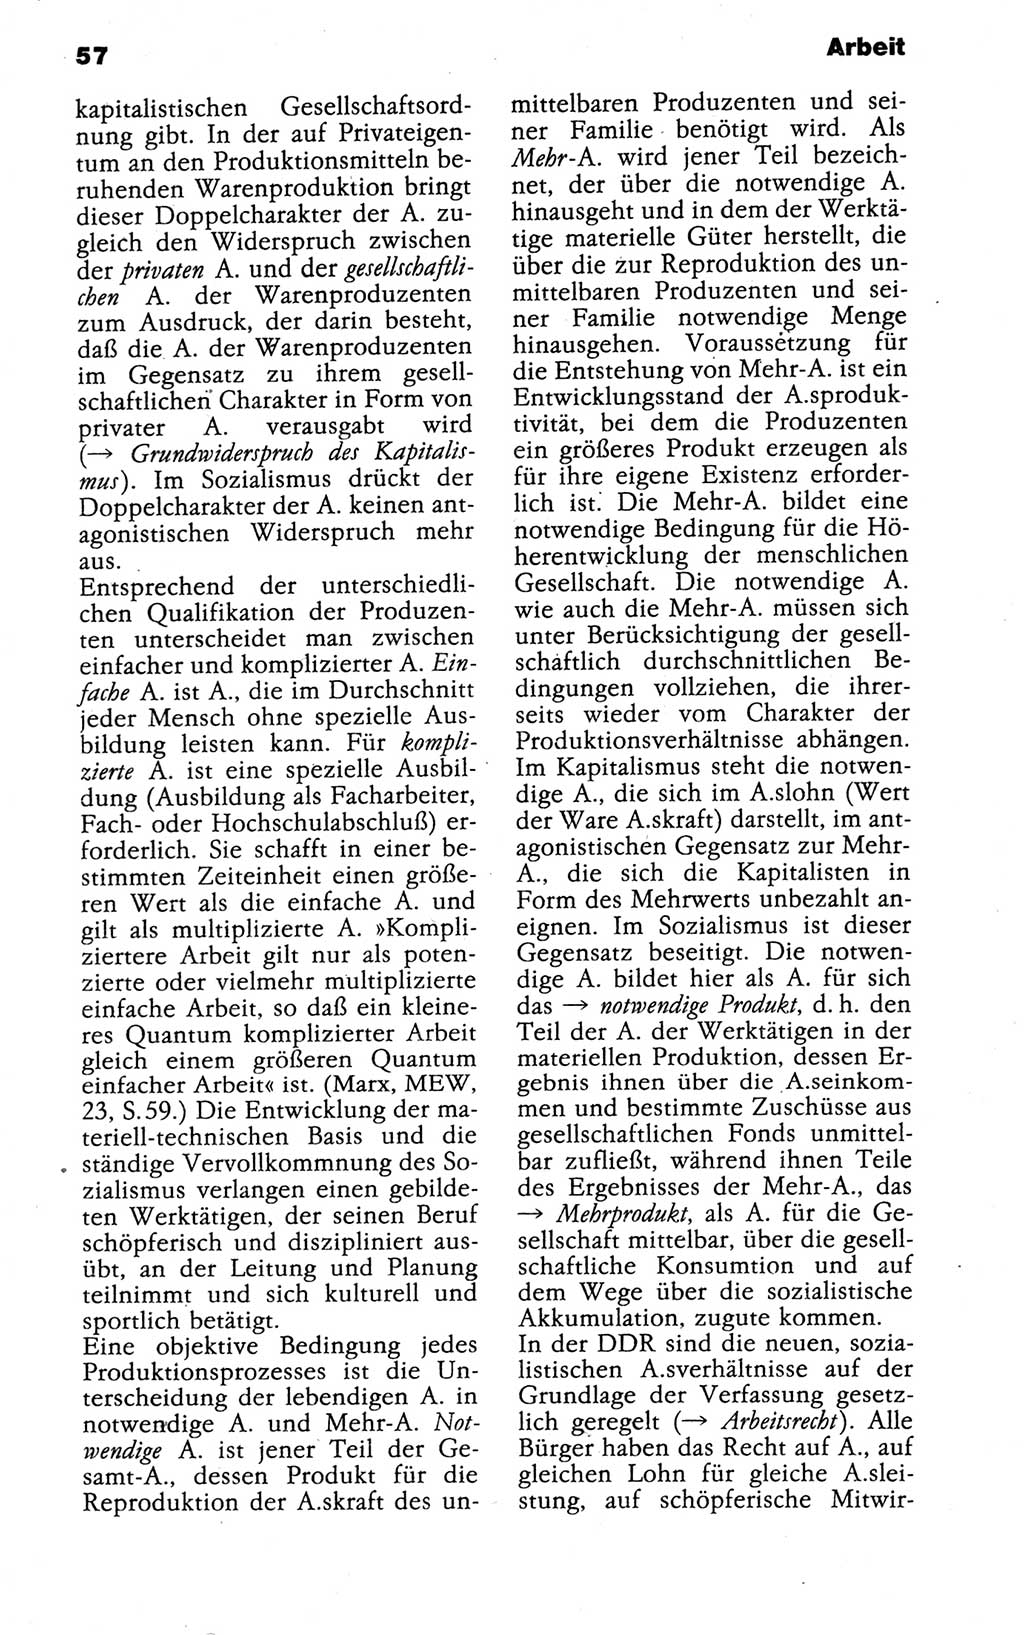 Kleines politisches Wörterbuch [Deutsche Demokratische Republik (DDR)] 1988, Seite 57 (Kl. pol. Wb. DDR 1988, S. 57)